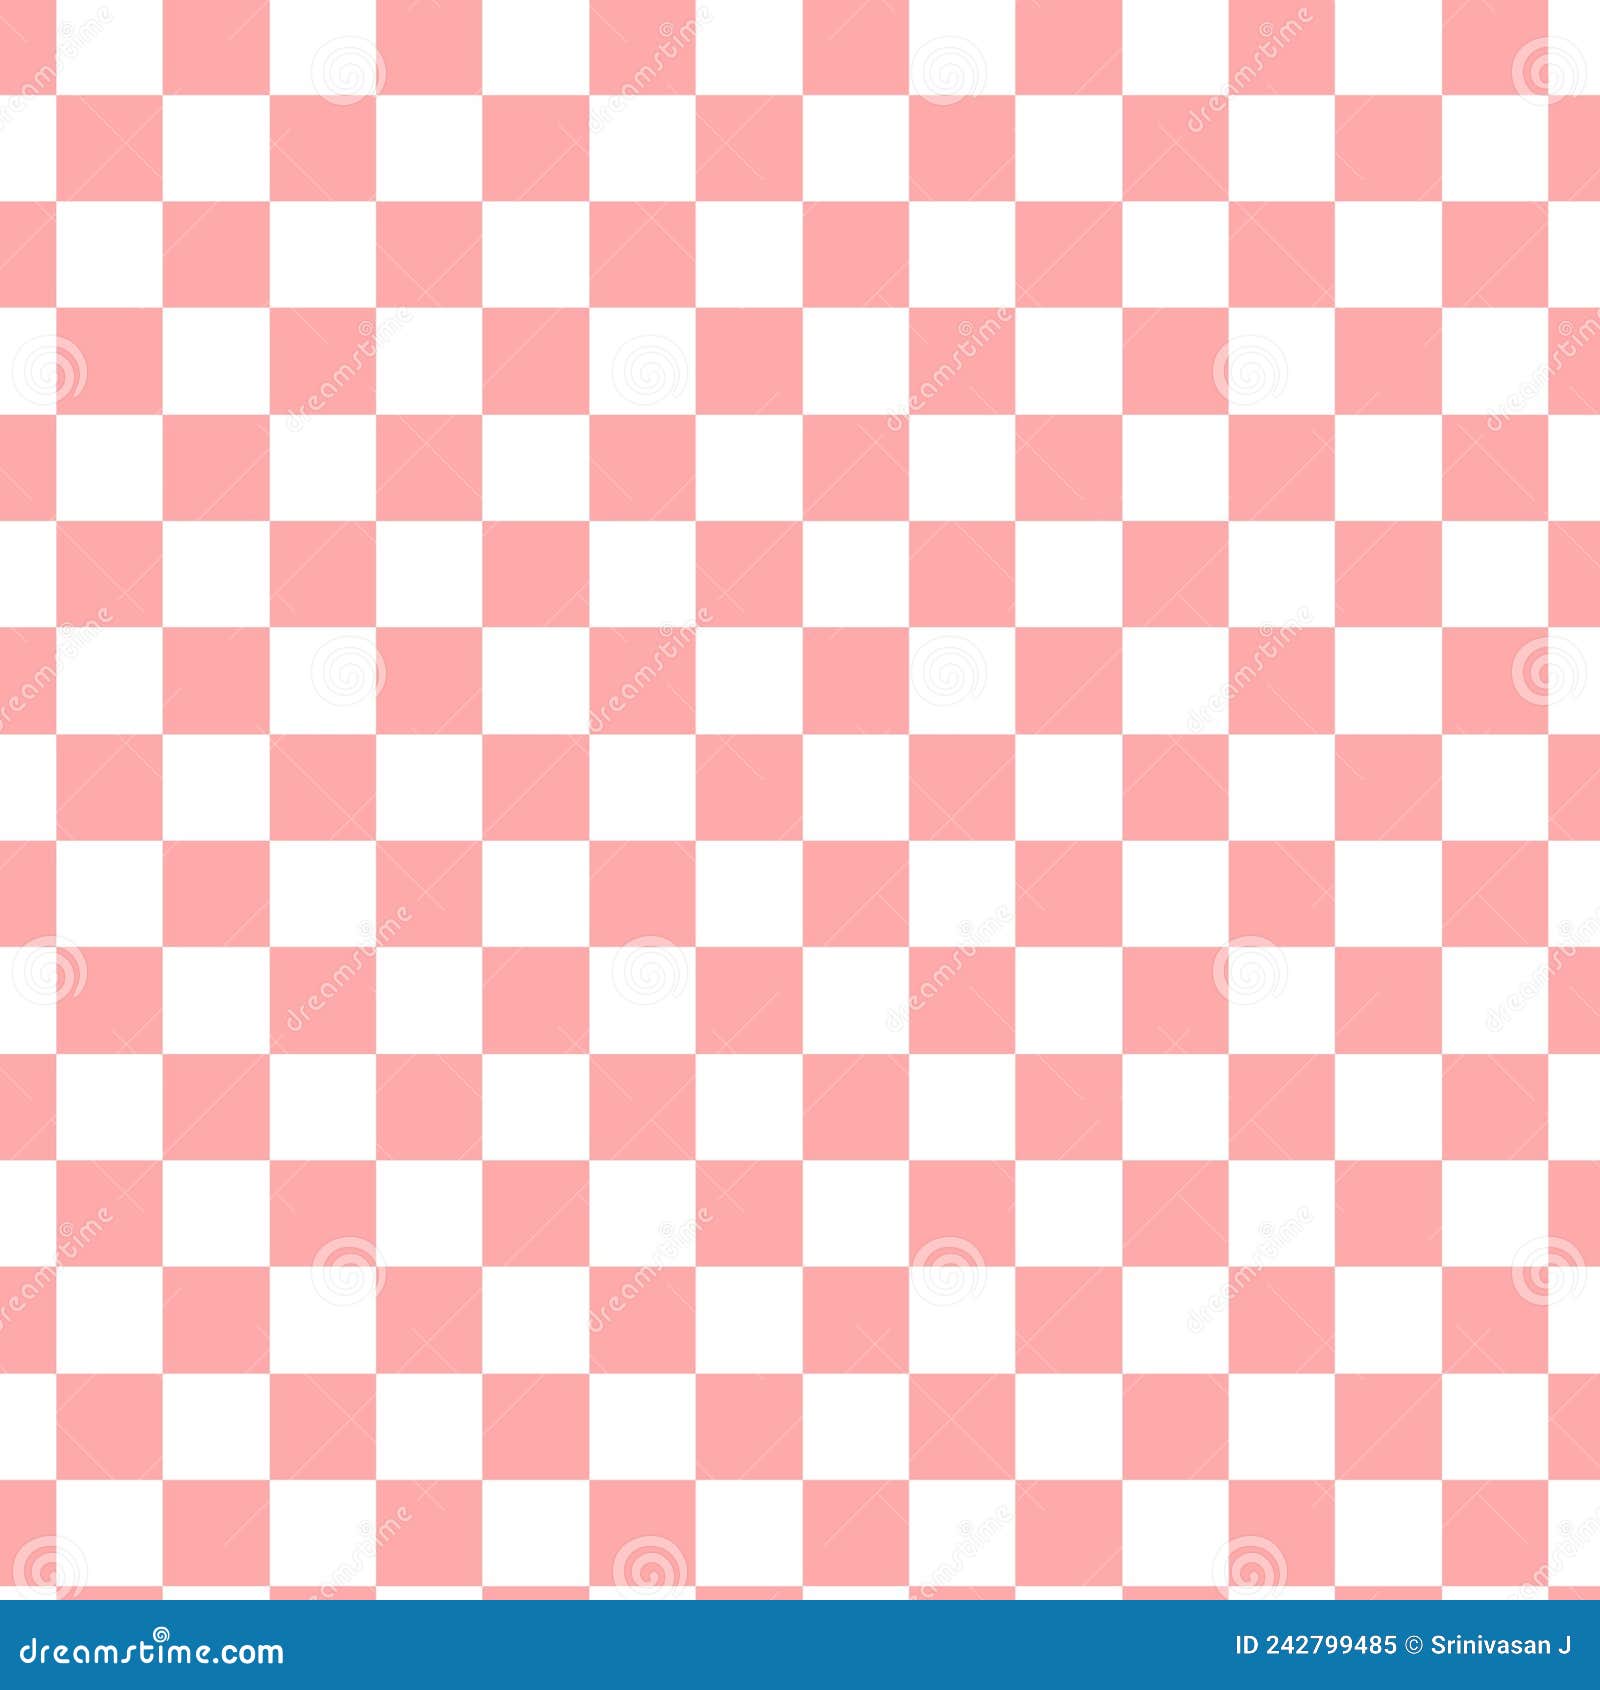 Fundo xadrez rosa e azul com um padrão de quadrados.